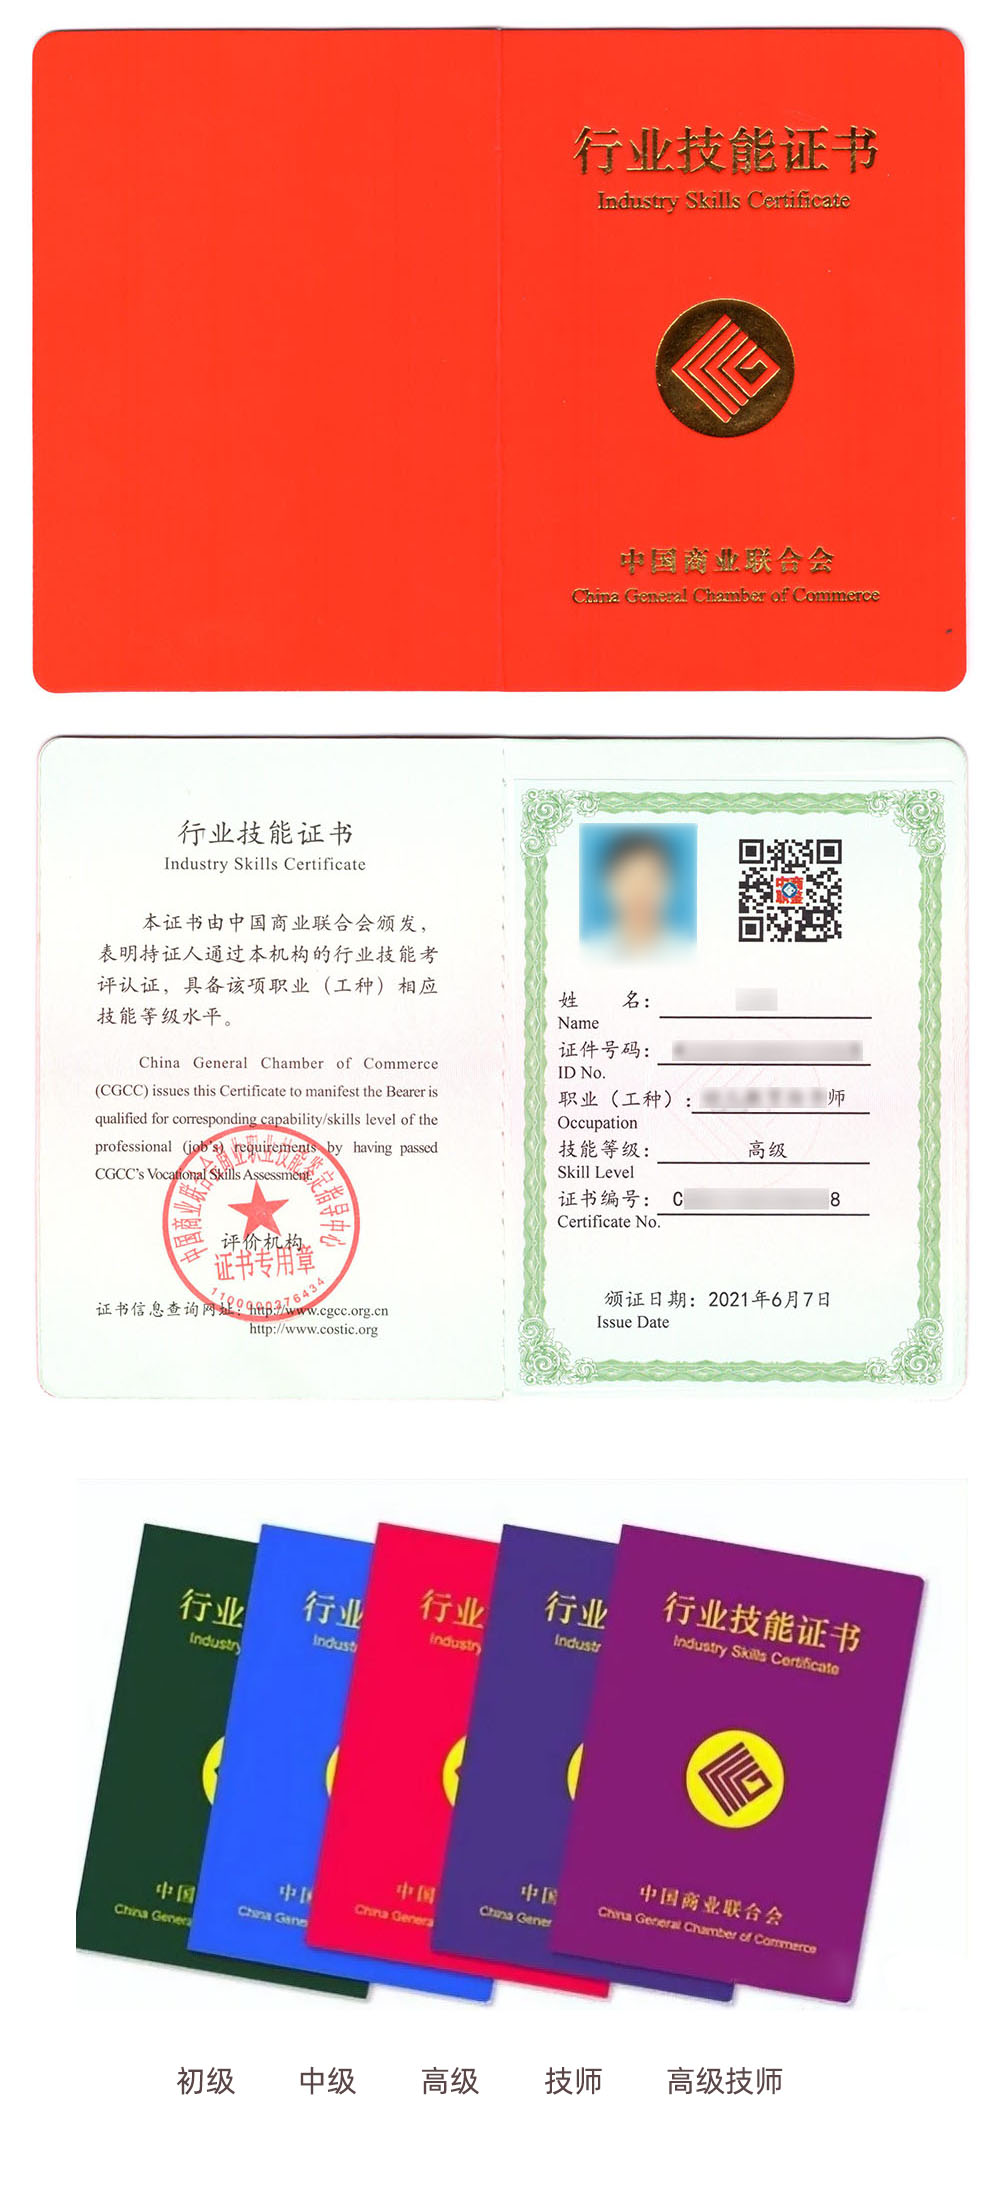 中国商业联合会商业职业技能鉴定中心 行业技能证书 酒店管理师证证书样本